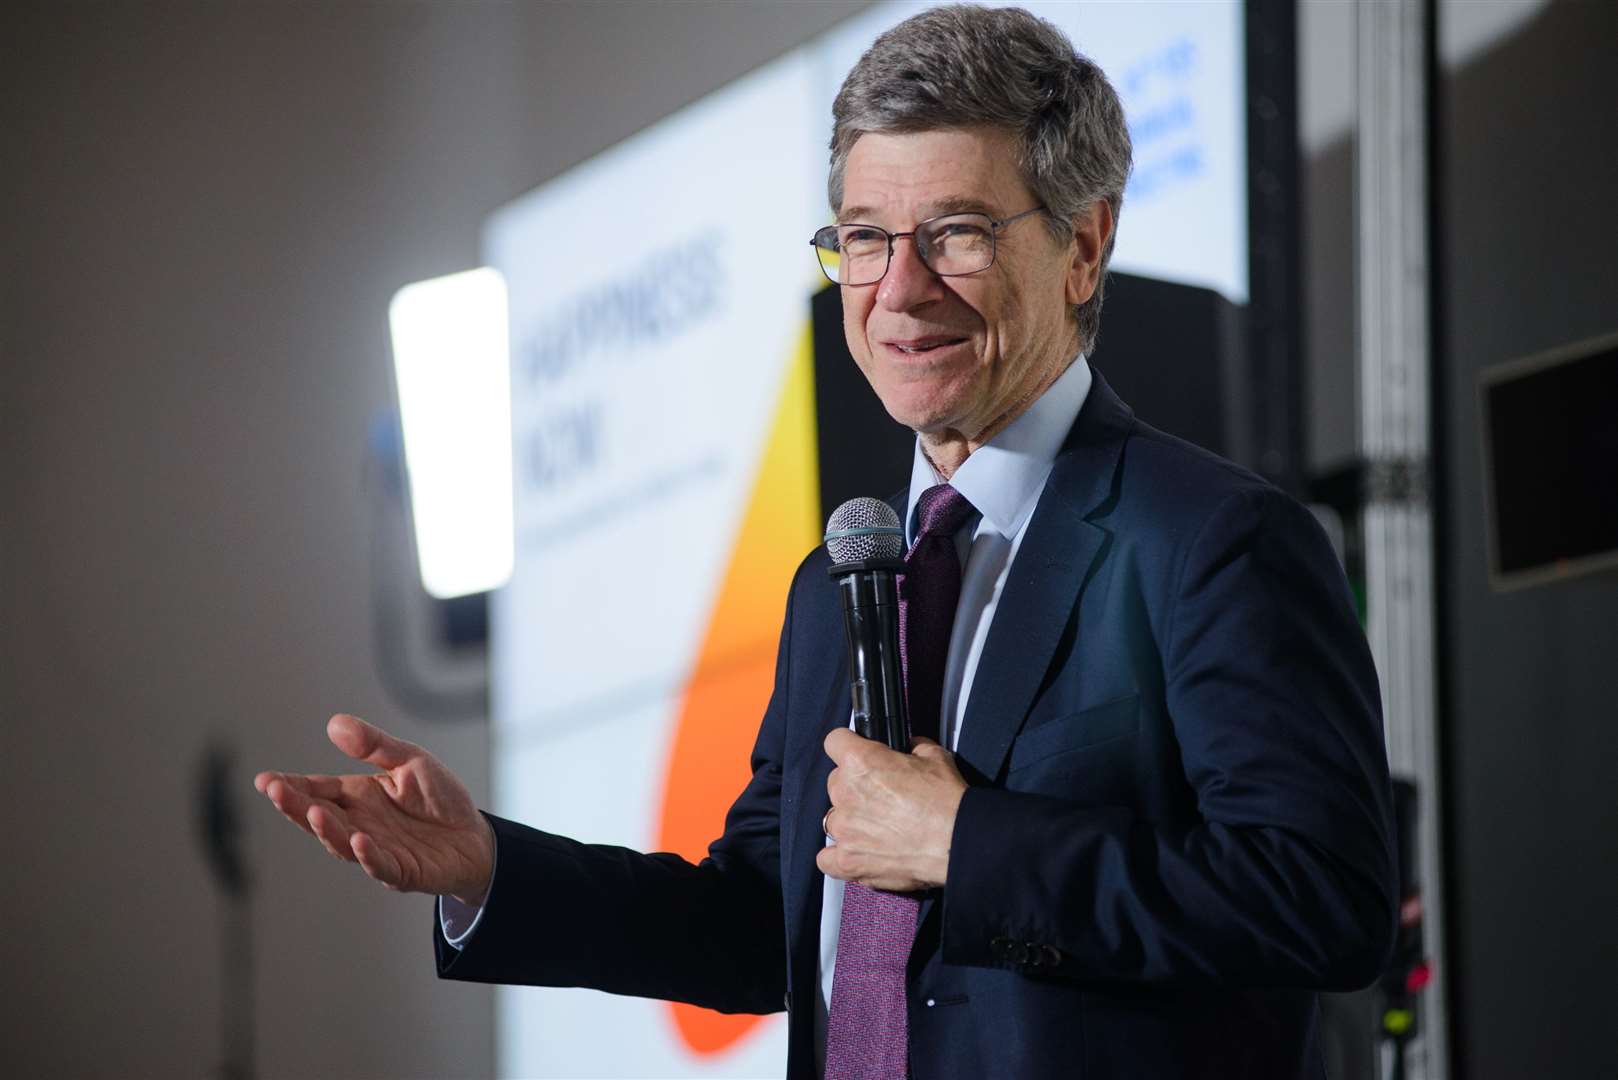 Le professeur Jeffrey Sachs donnera une conférence en ligne.  Photo : Nesterenko Maksym